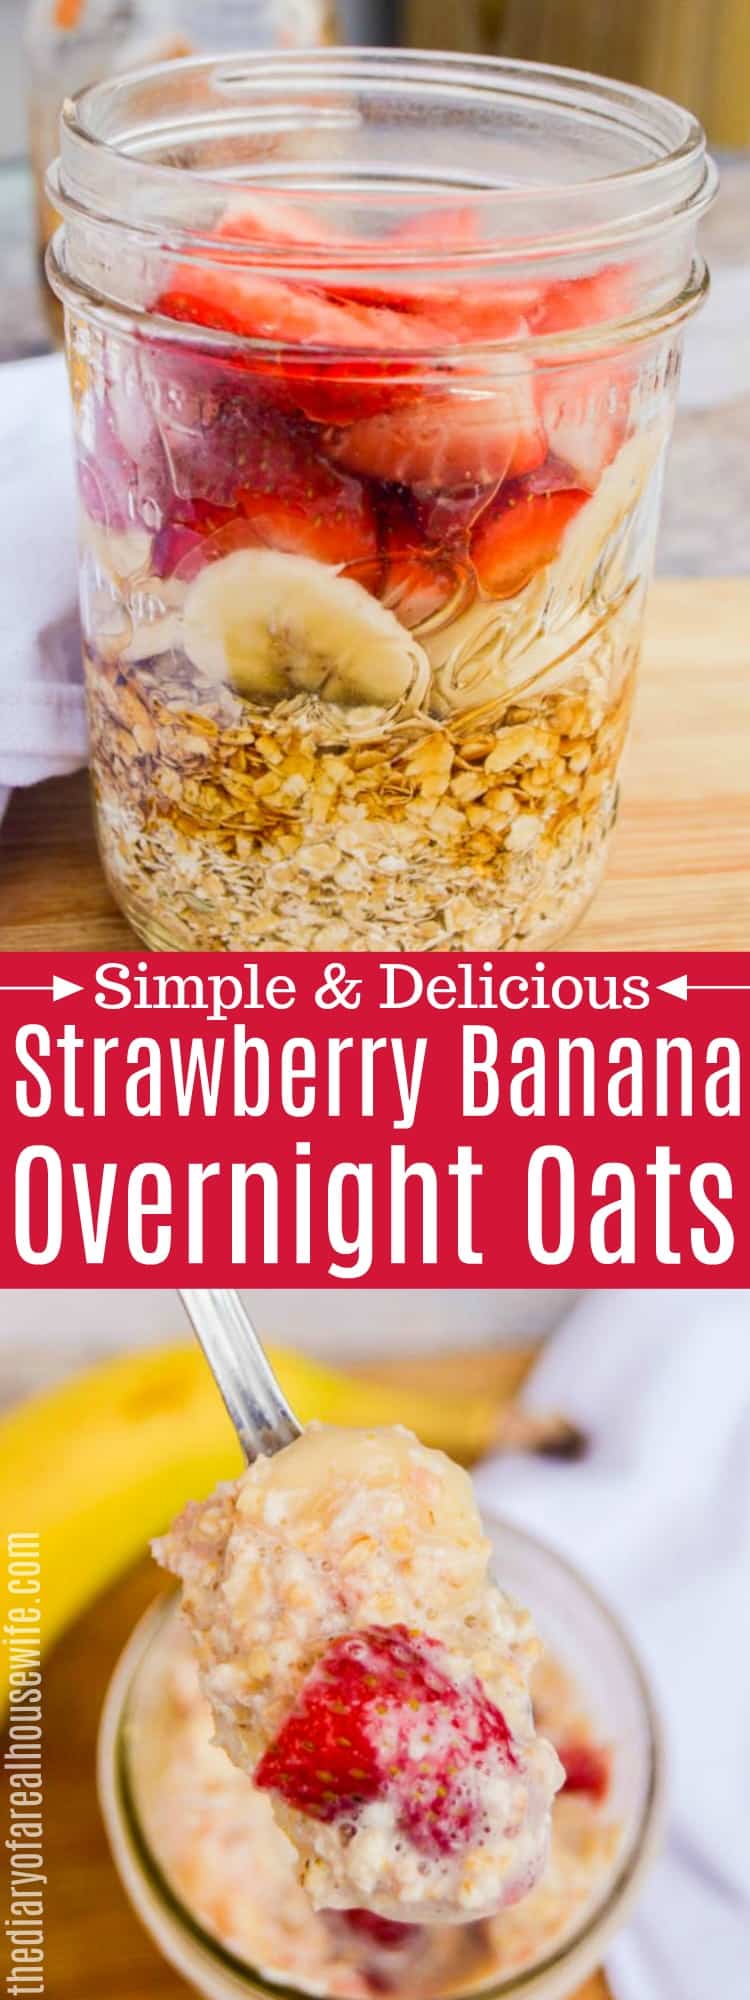 Strawberry Banana Overnight Oats